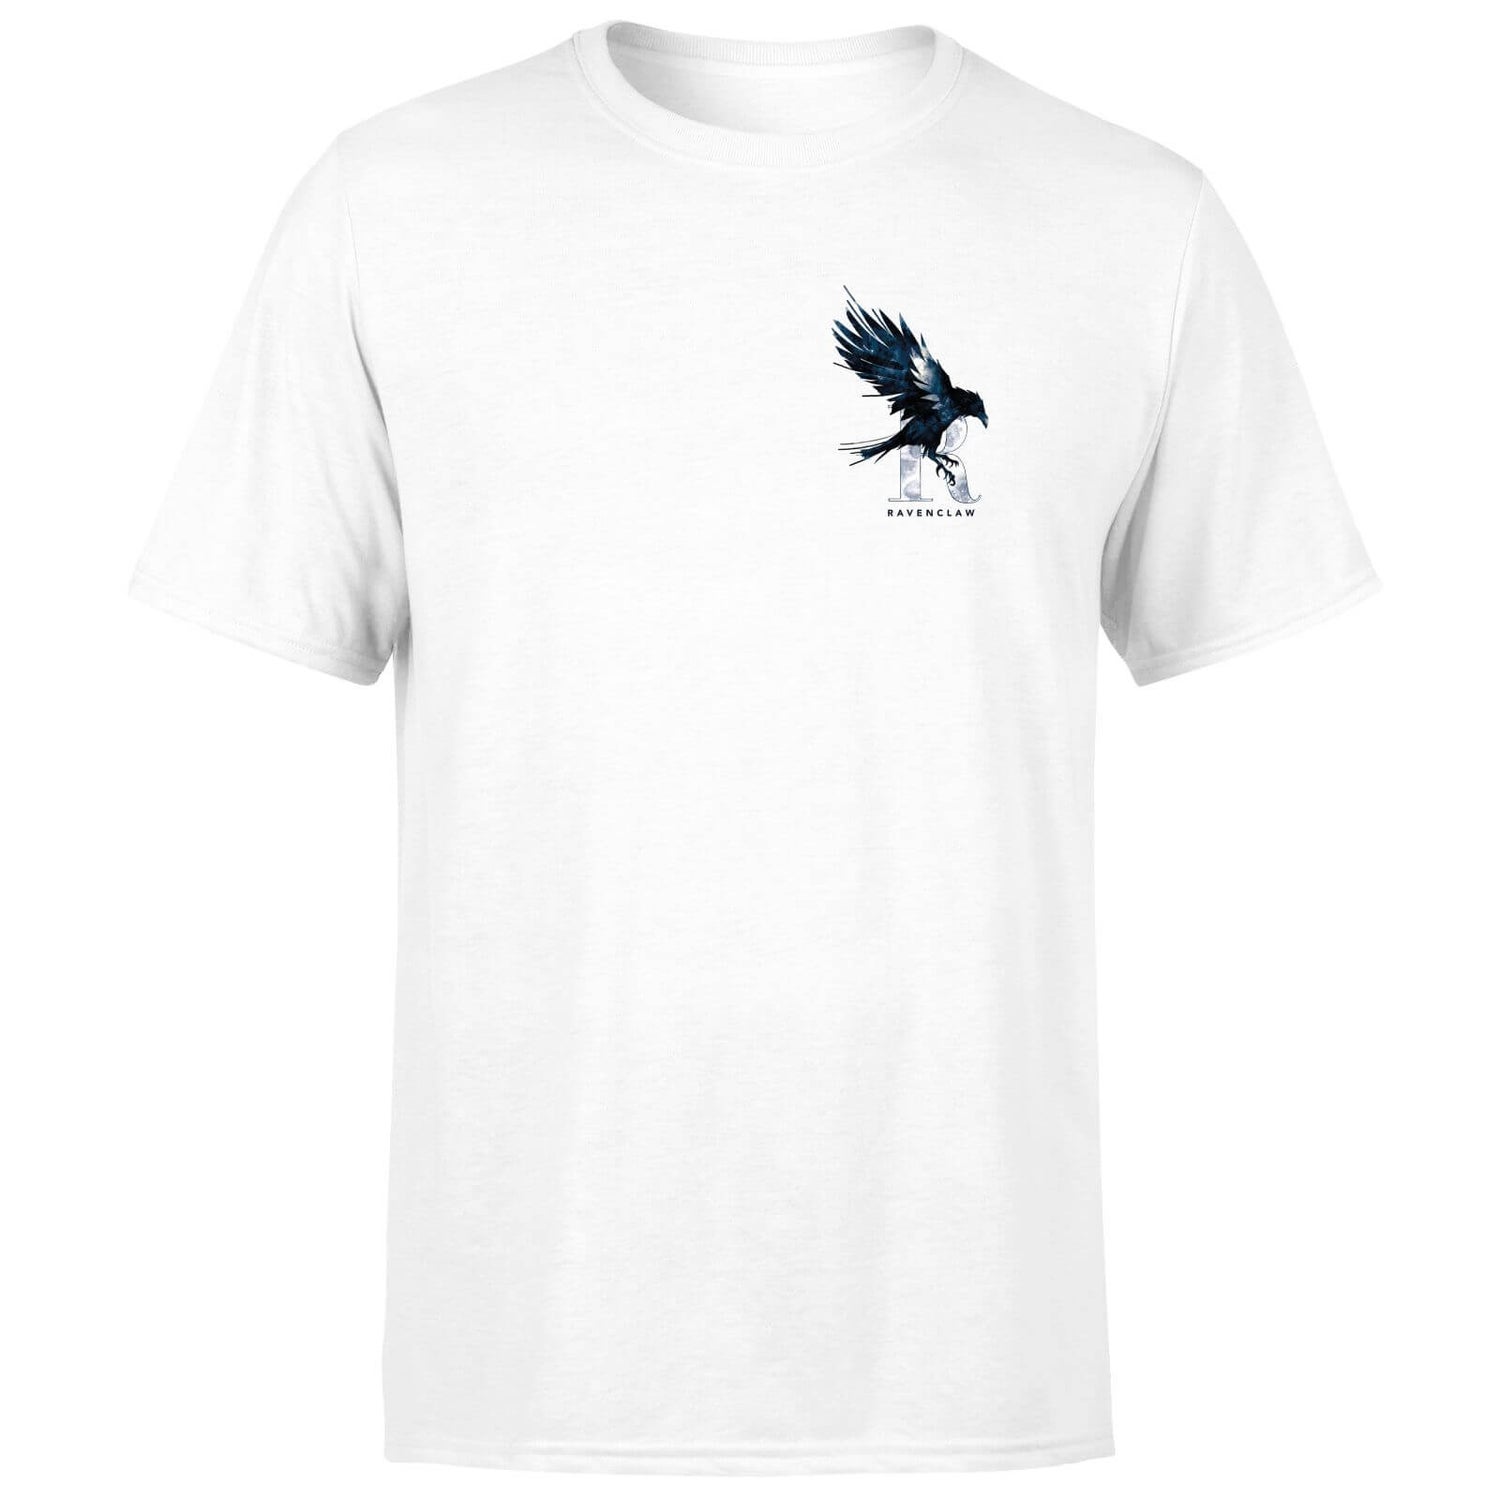 Camiseta unisex Ravenclaw de Harry Potter - Blanco